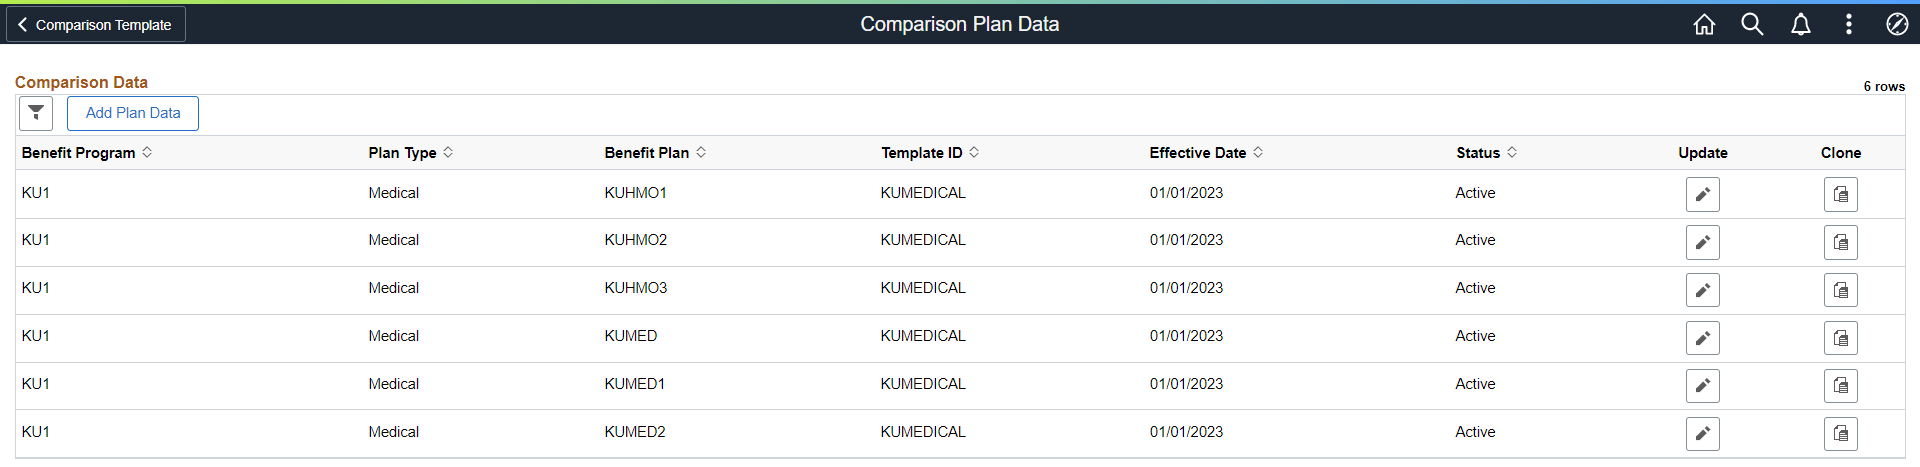 Comparison Plan Data Component